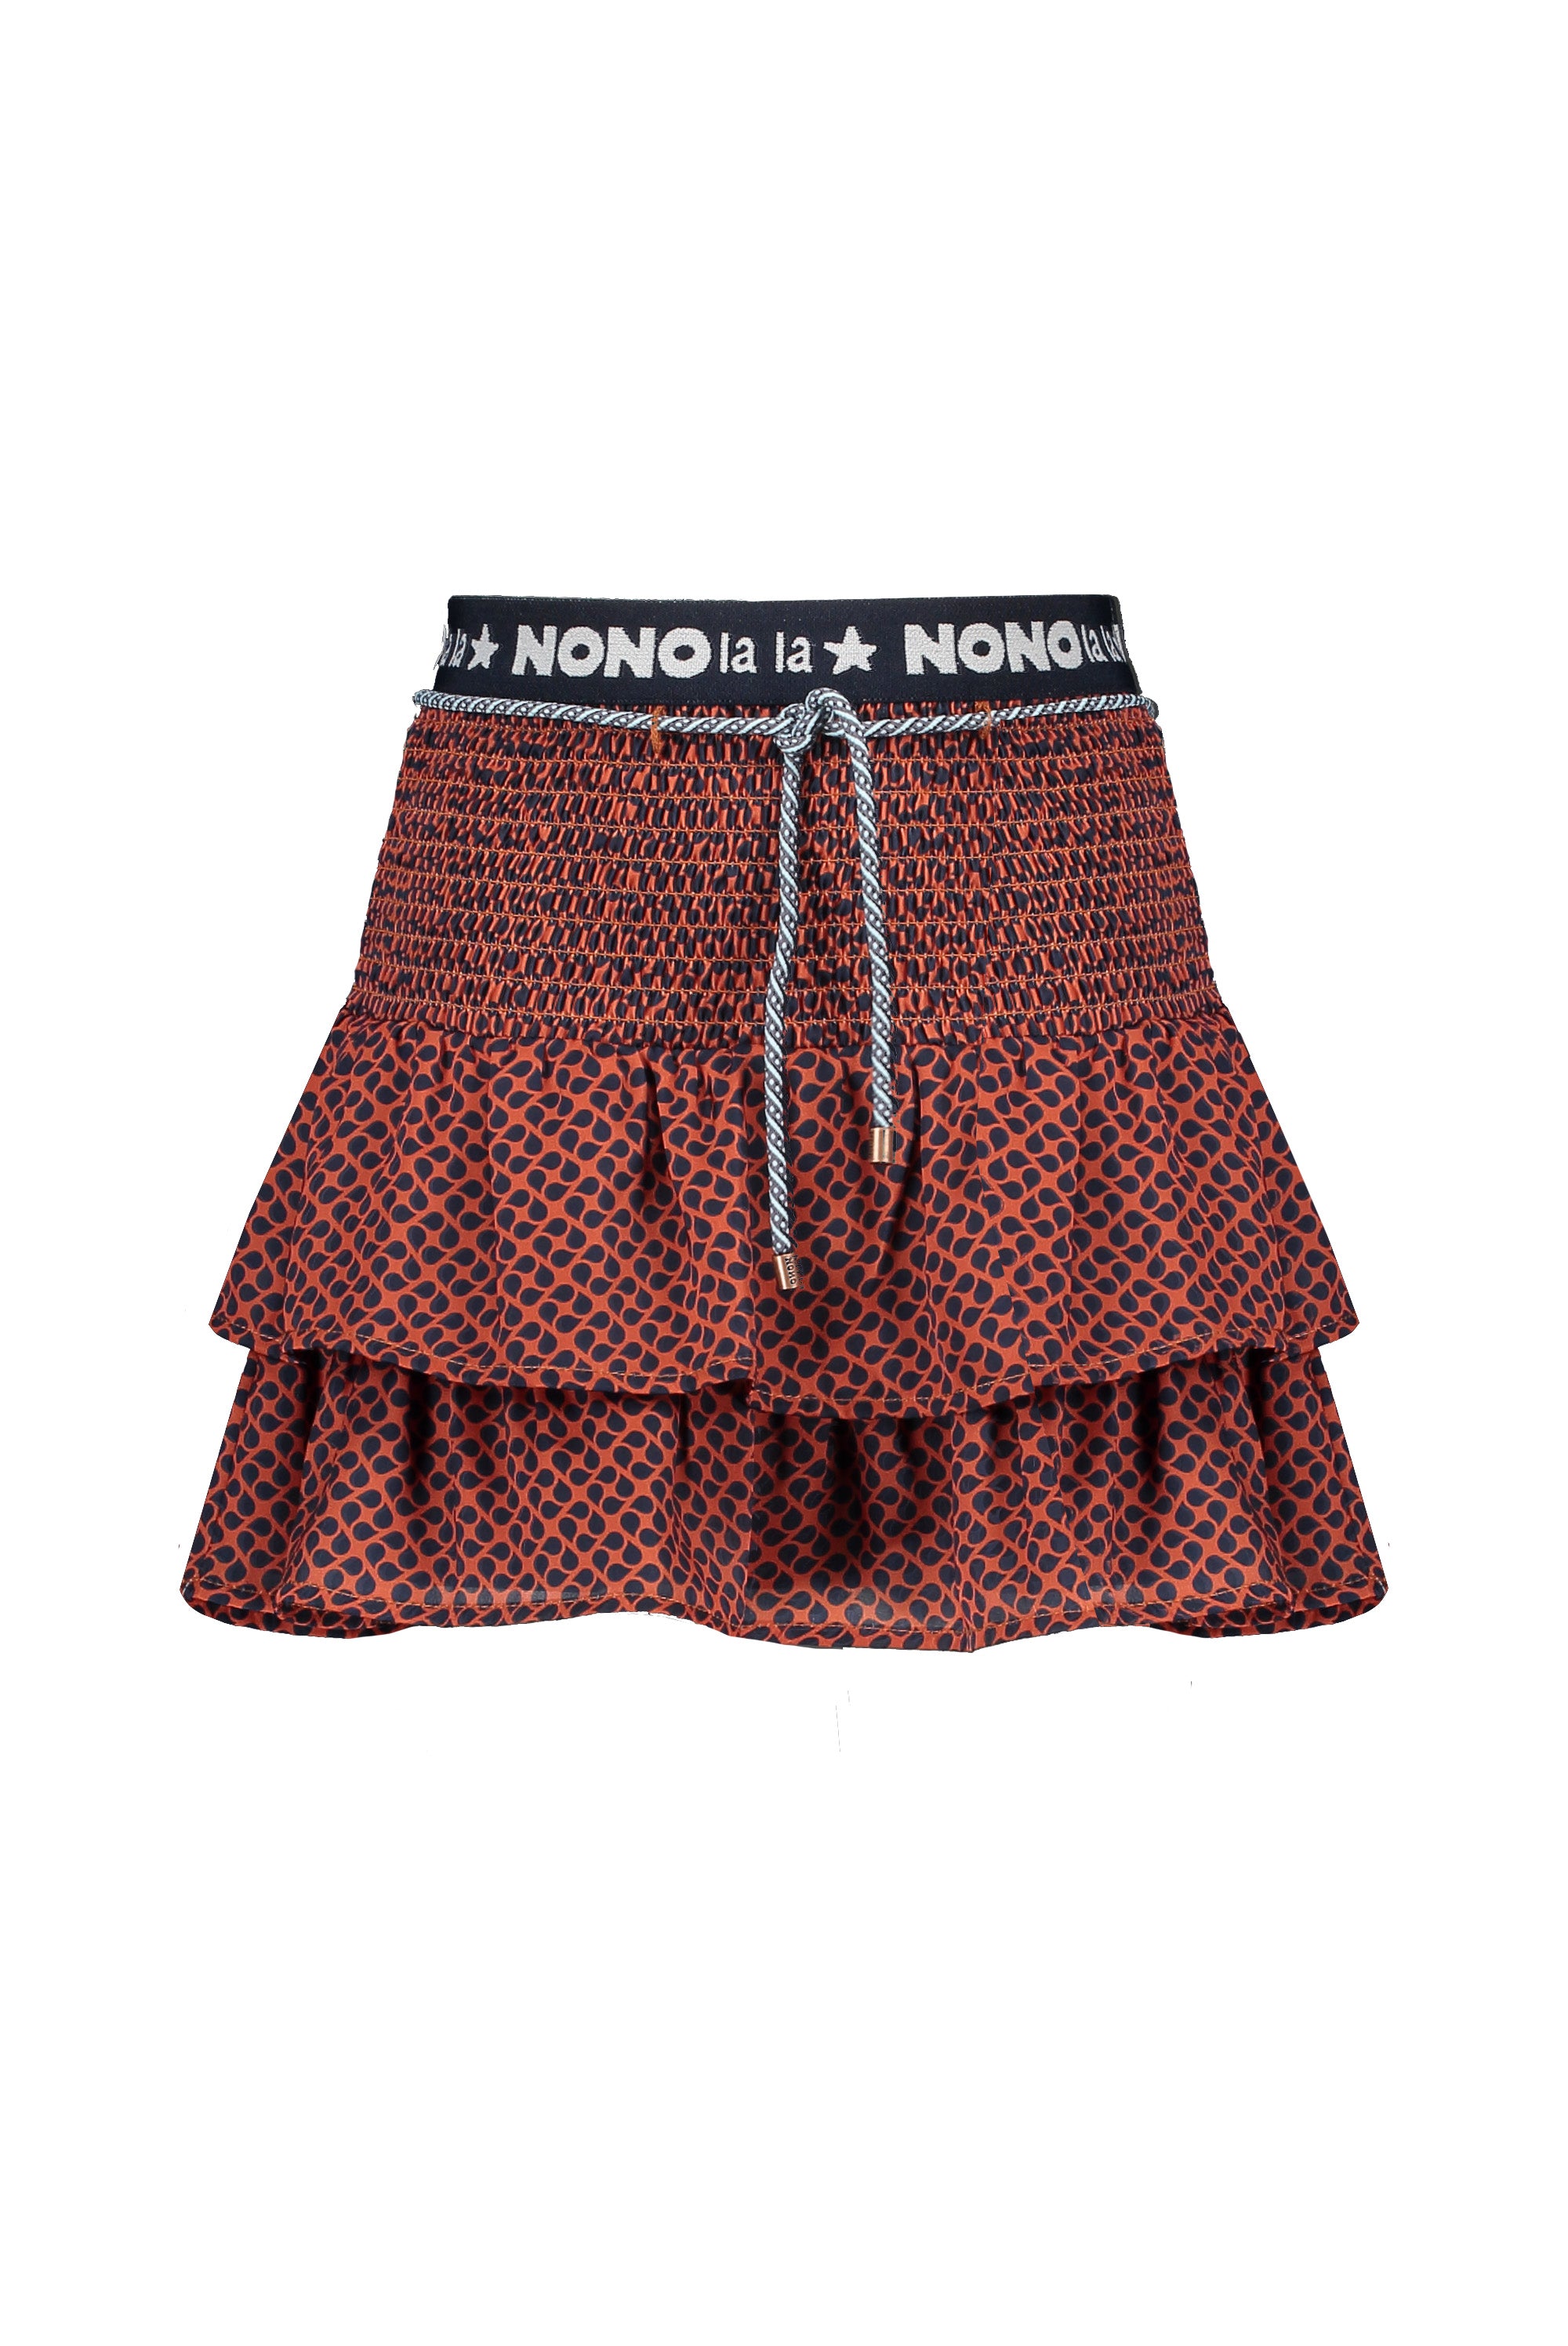 NoNo Norah 2 layered skirt+smocked waist